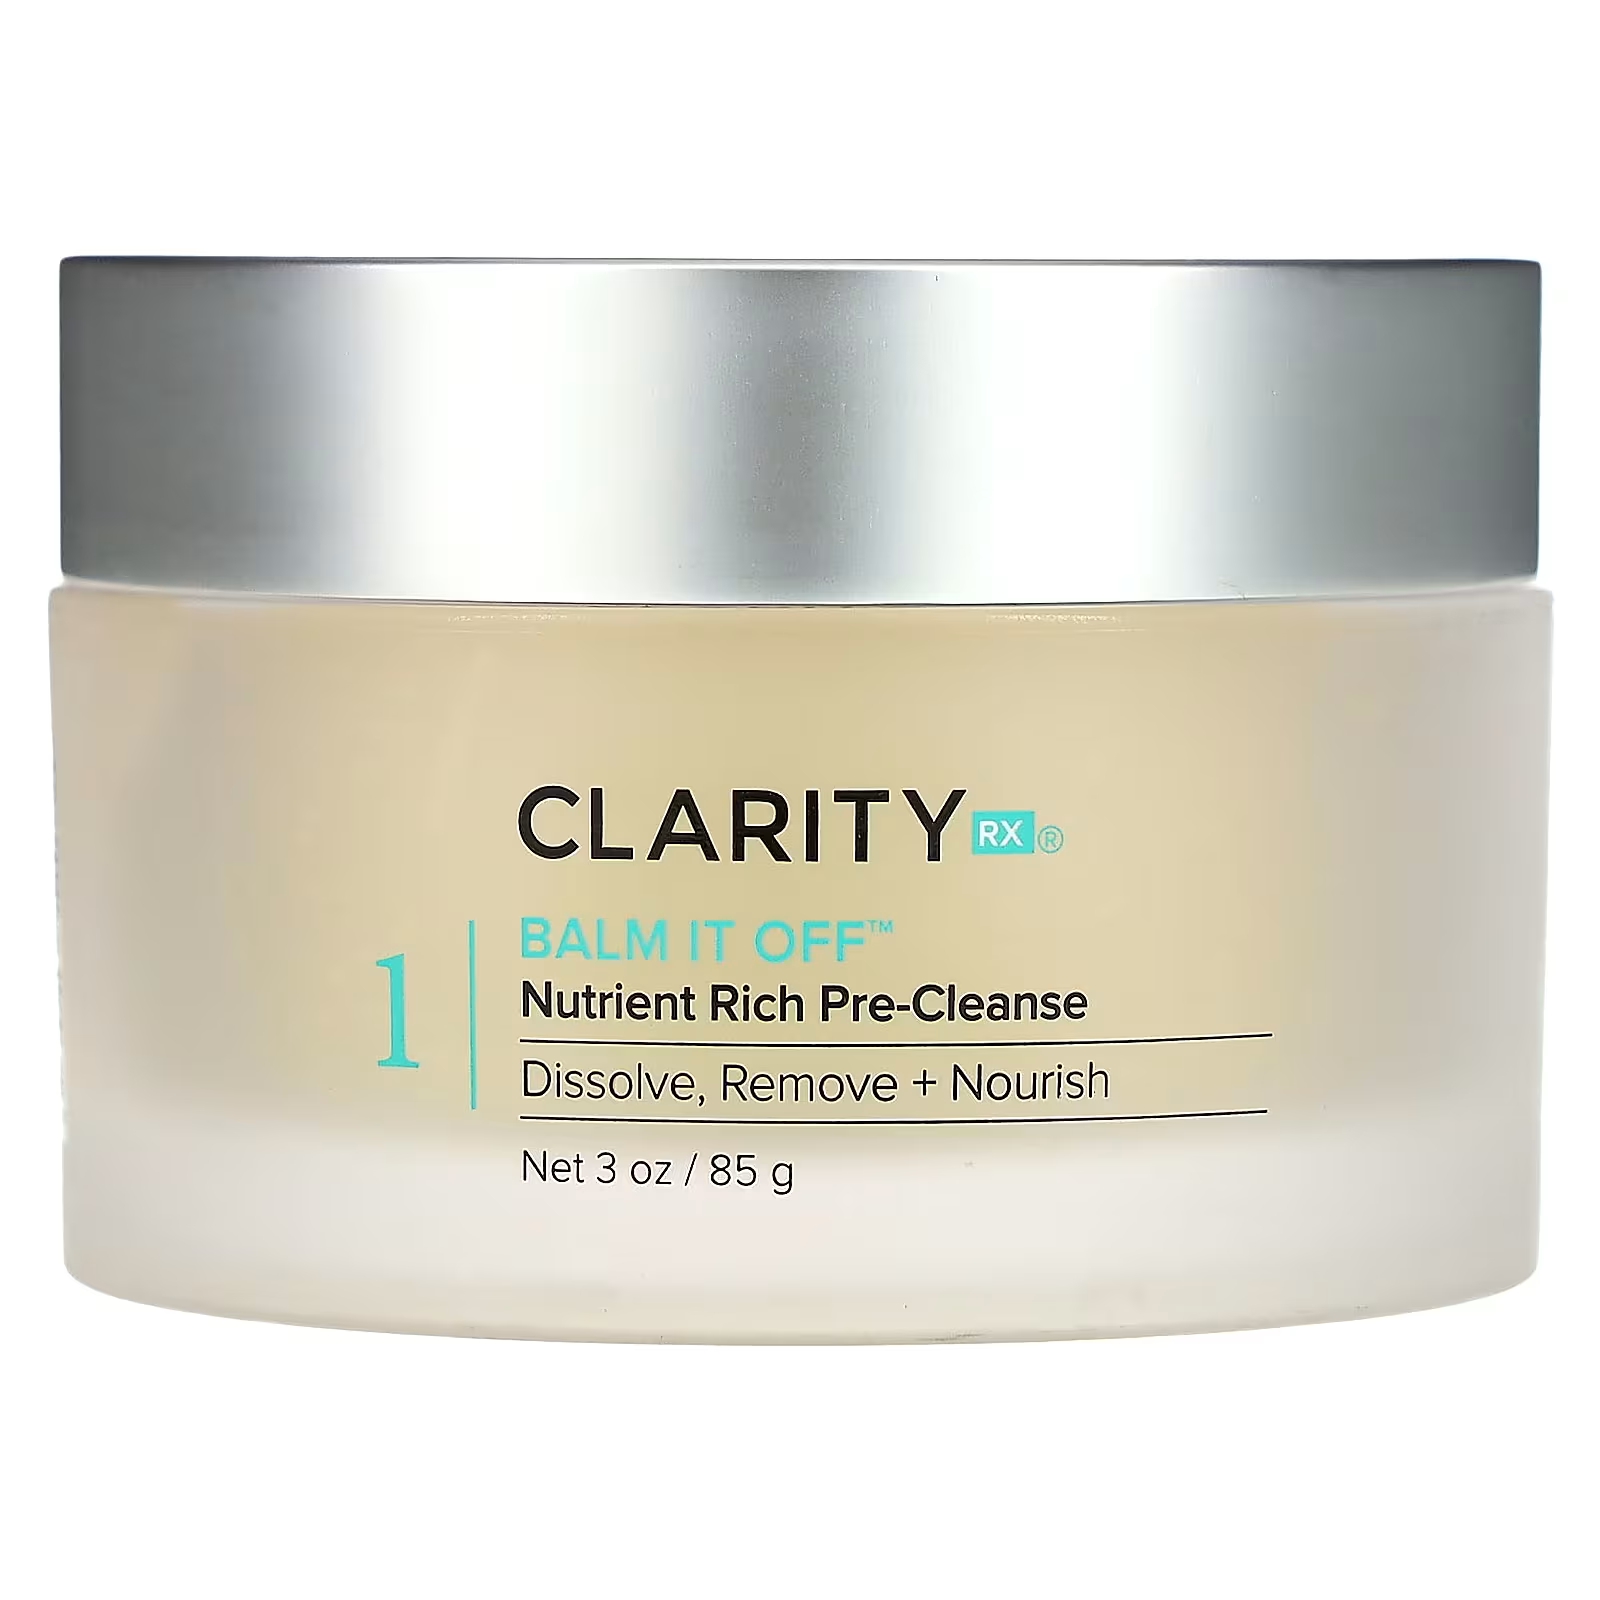 ClarityRx Balm It Off, богатое питательными веществами предварительное очищение, 3 унции (85 г)